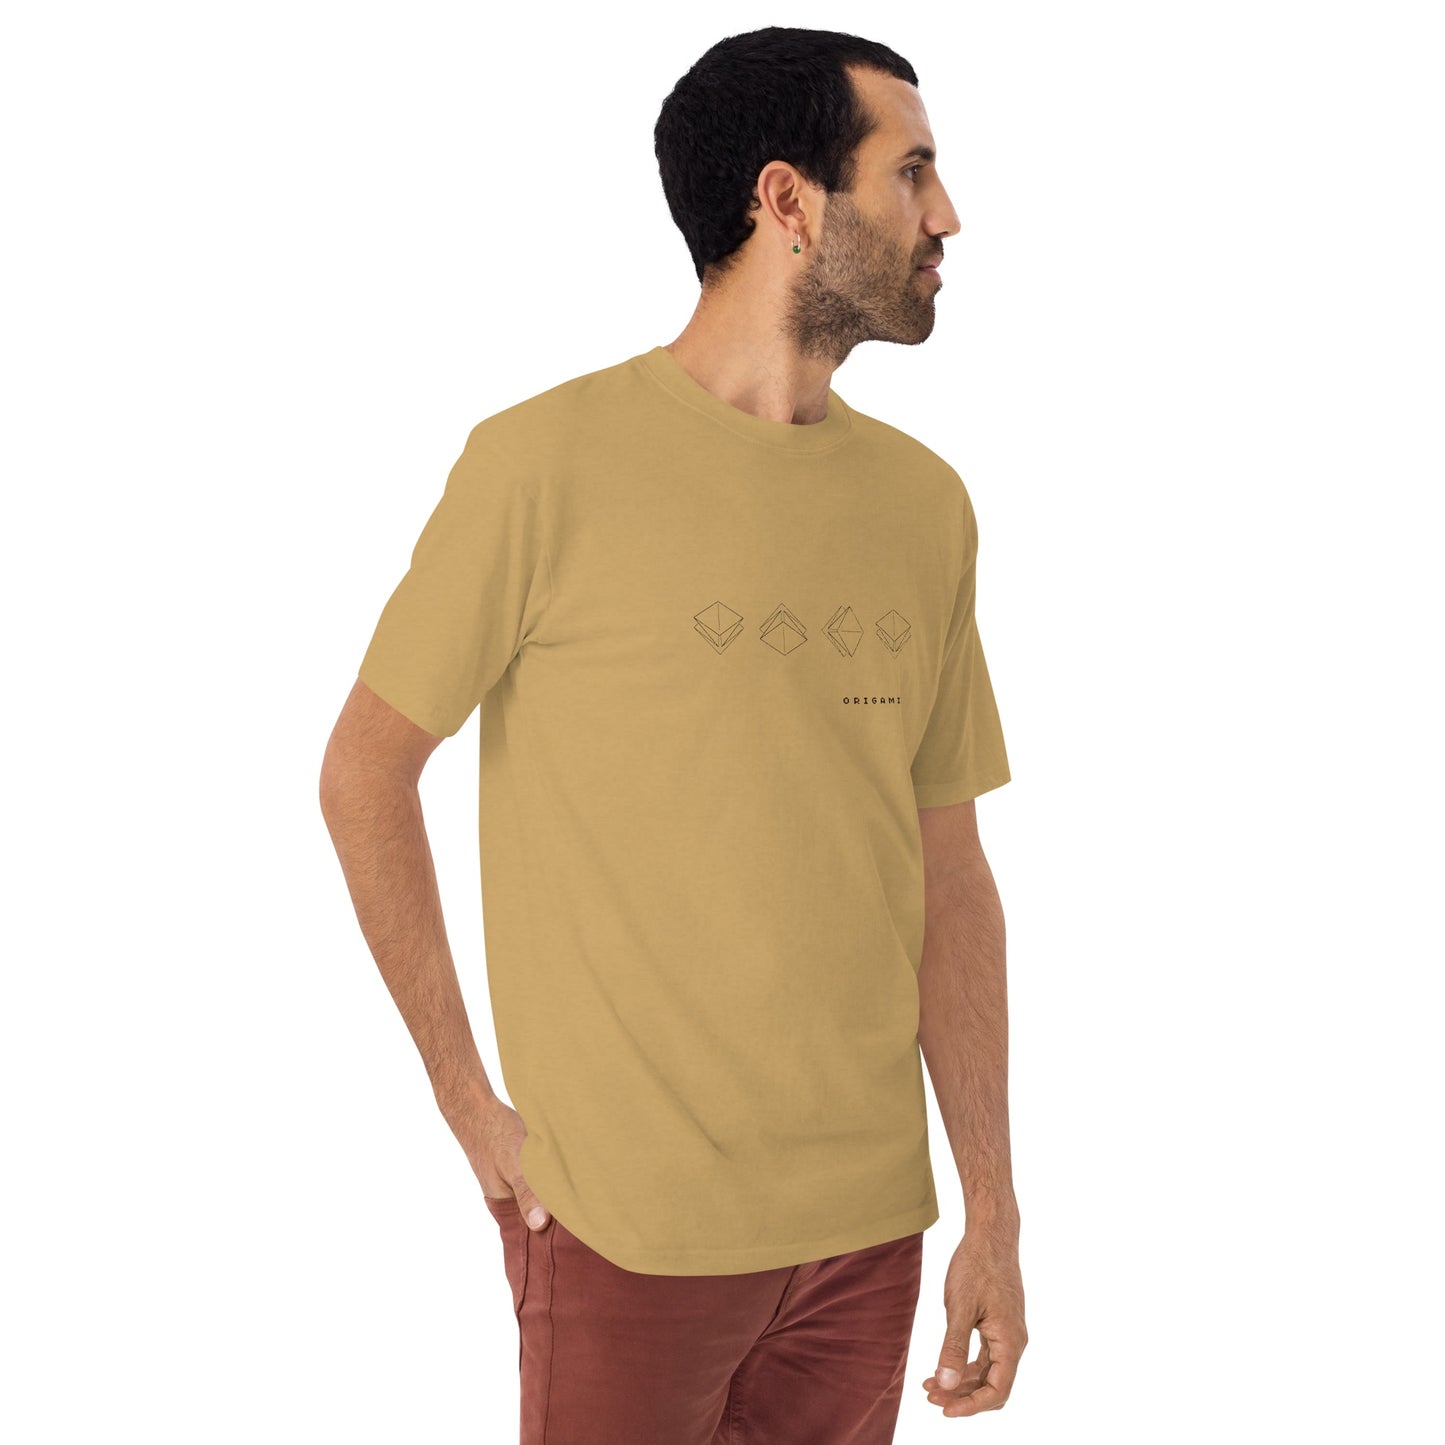 折り図 四角 厚手Tシャツ [ライトカラー] ヴィンテージゴールド S 01